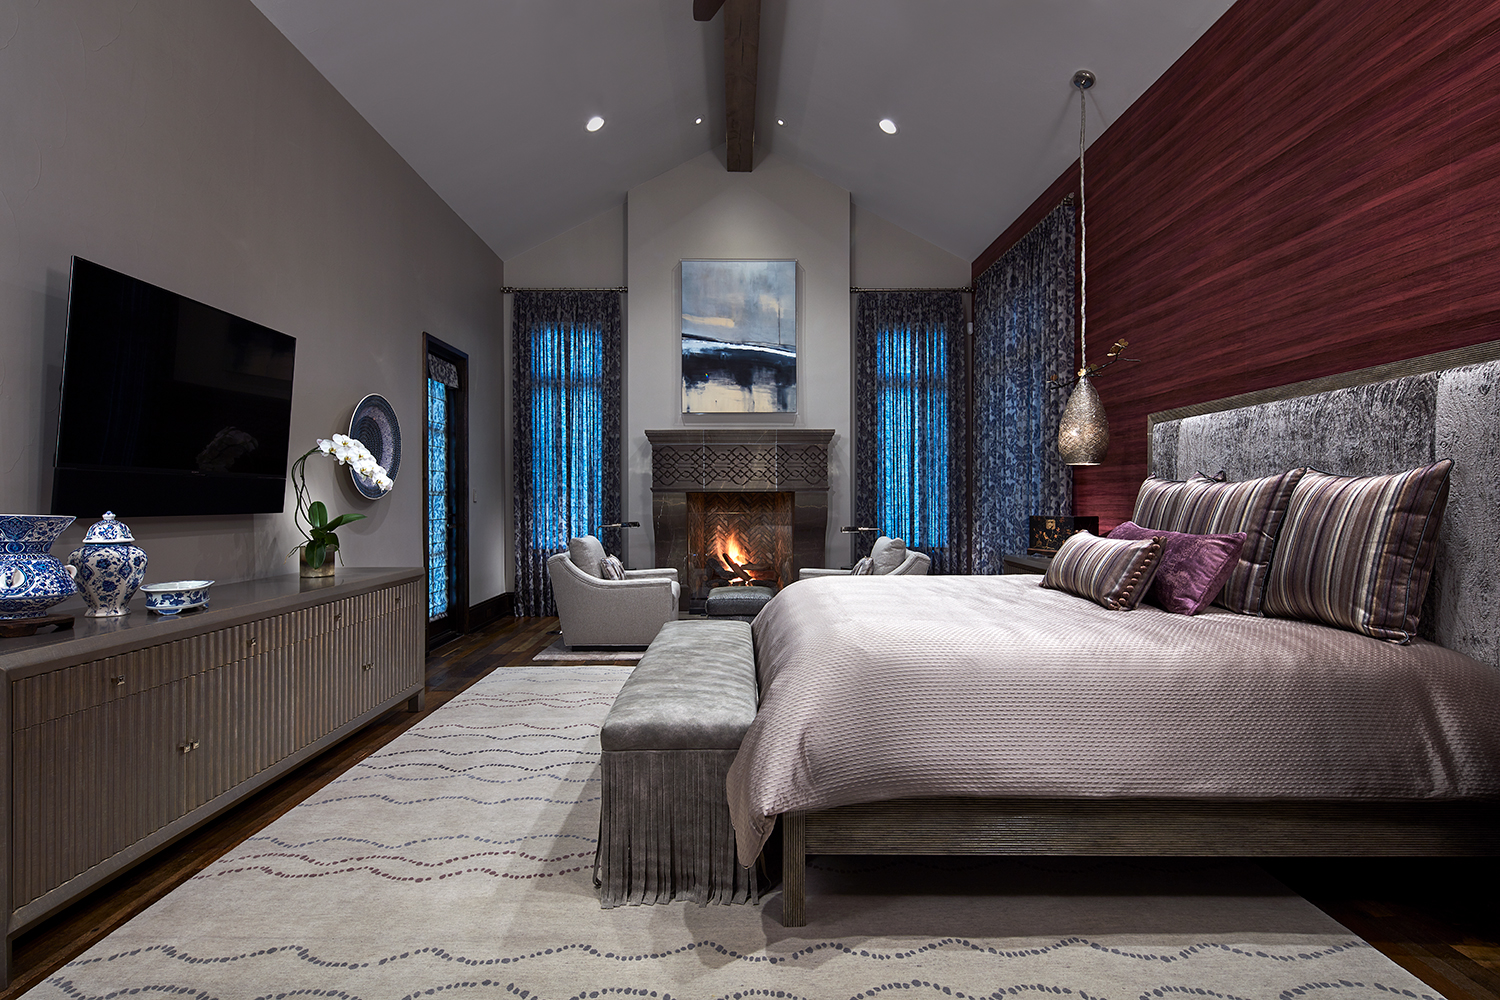 A custom wool rug defines the sleeping area in this master bedroom suite.